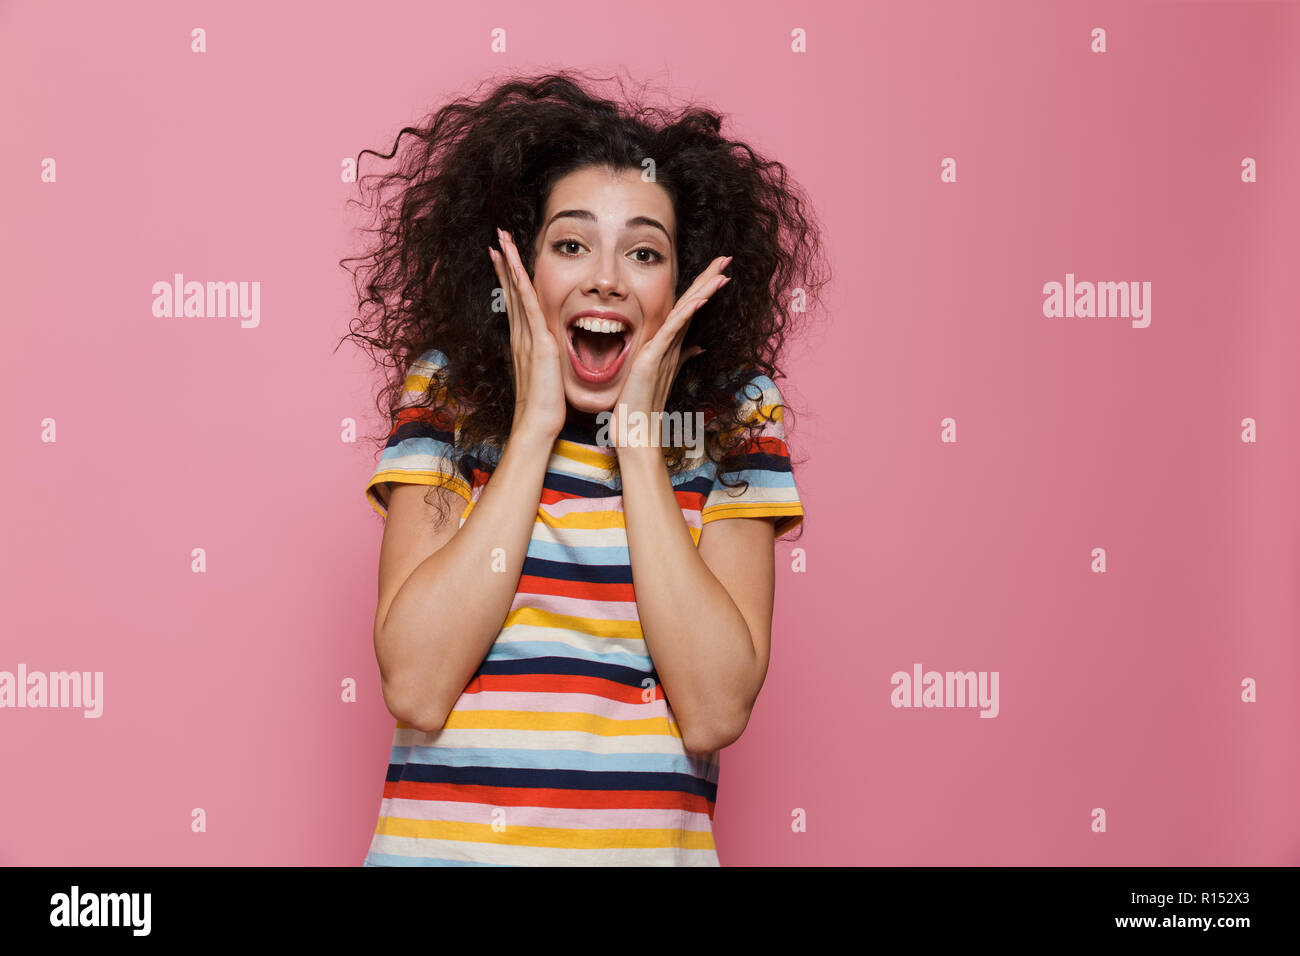 Image femme 20s avec les cheveux bouclés et visage souriant toucher isolés sur fond rose Banque D'Images